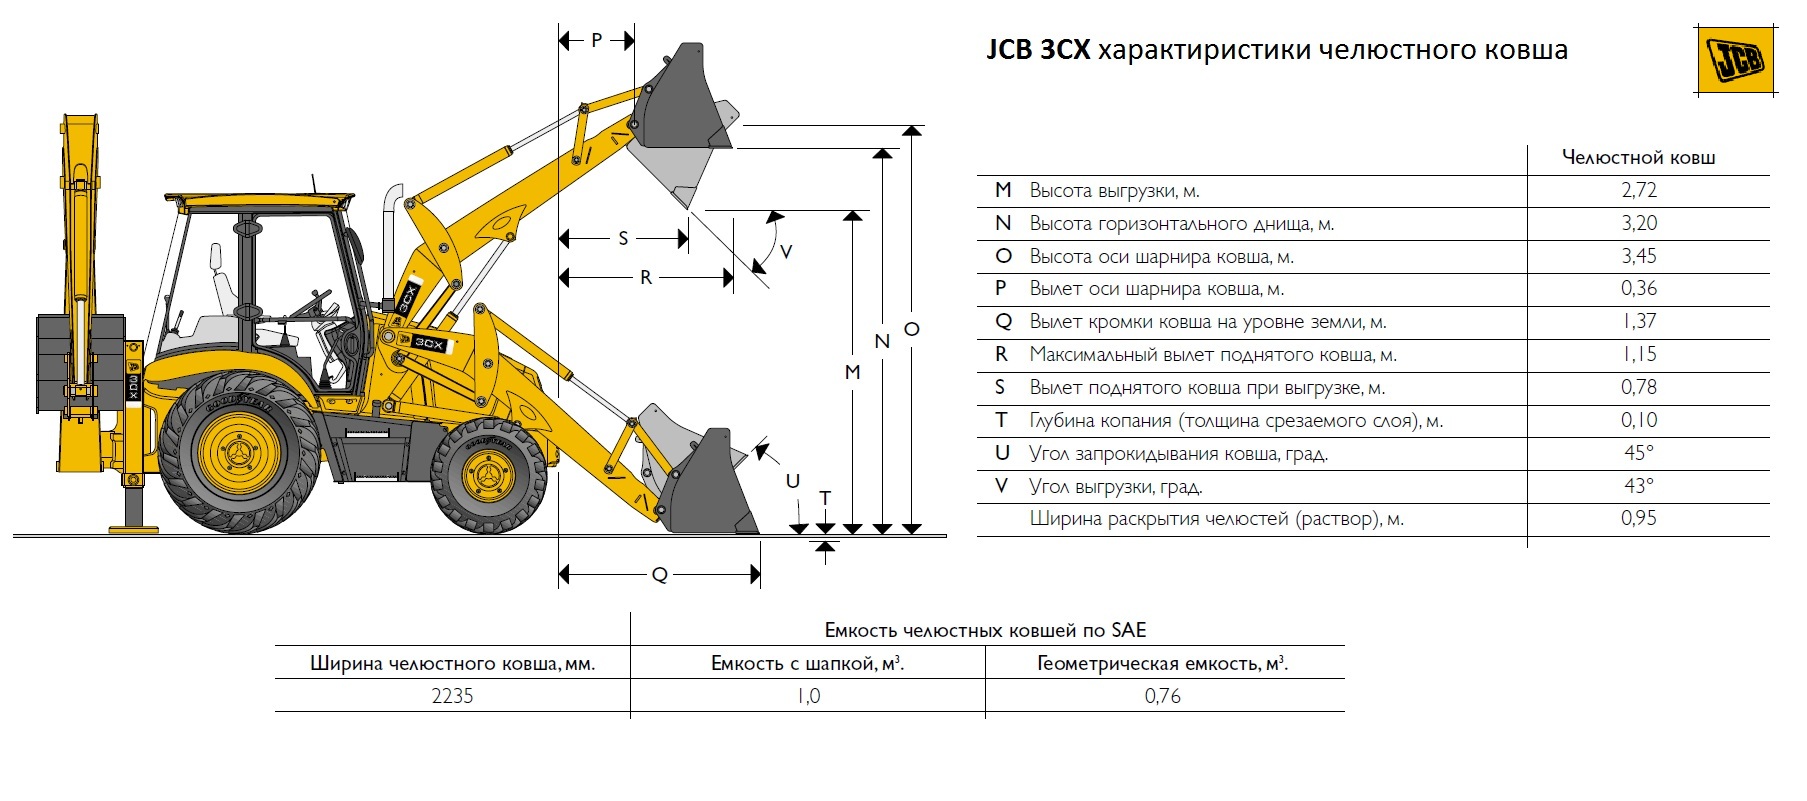 Экскаваторы-погрузчики JCB 3CX